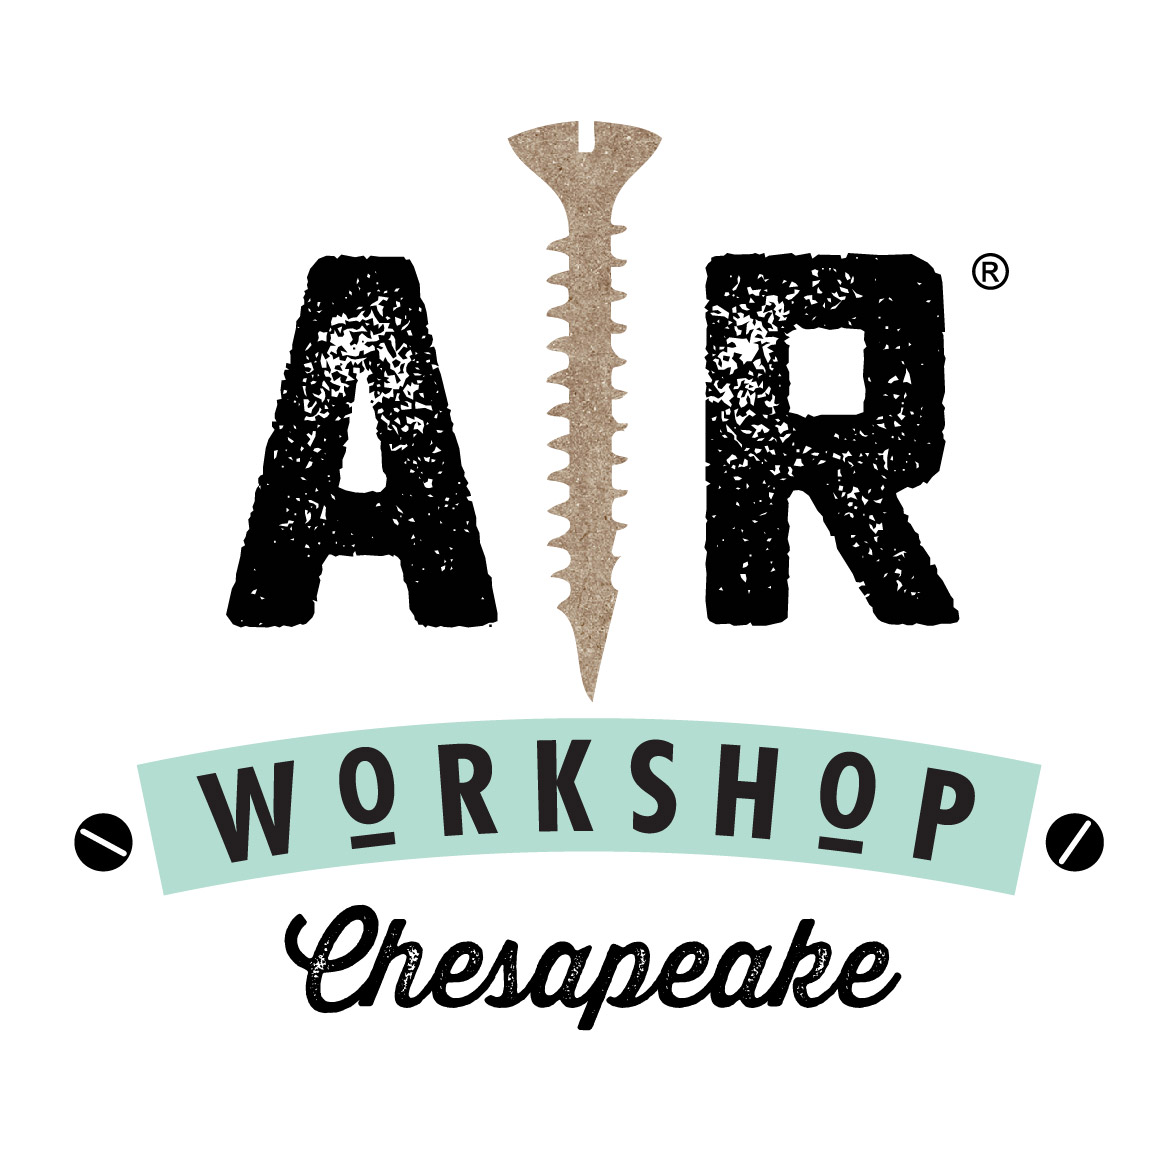 AR Workshop Chesapeake's Logo